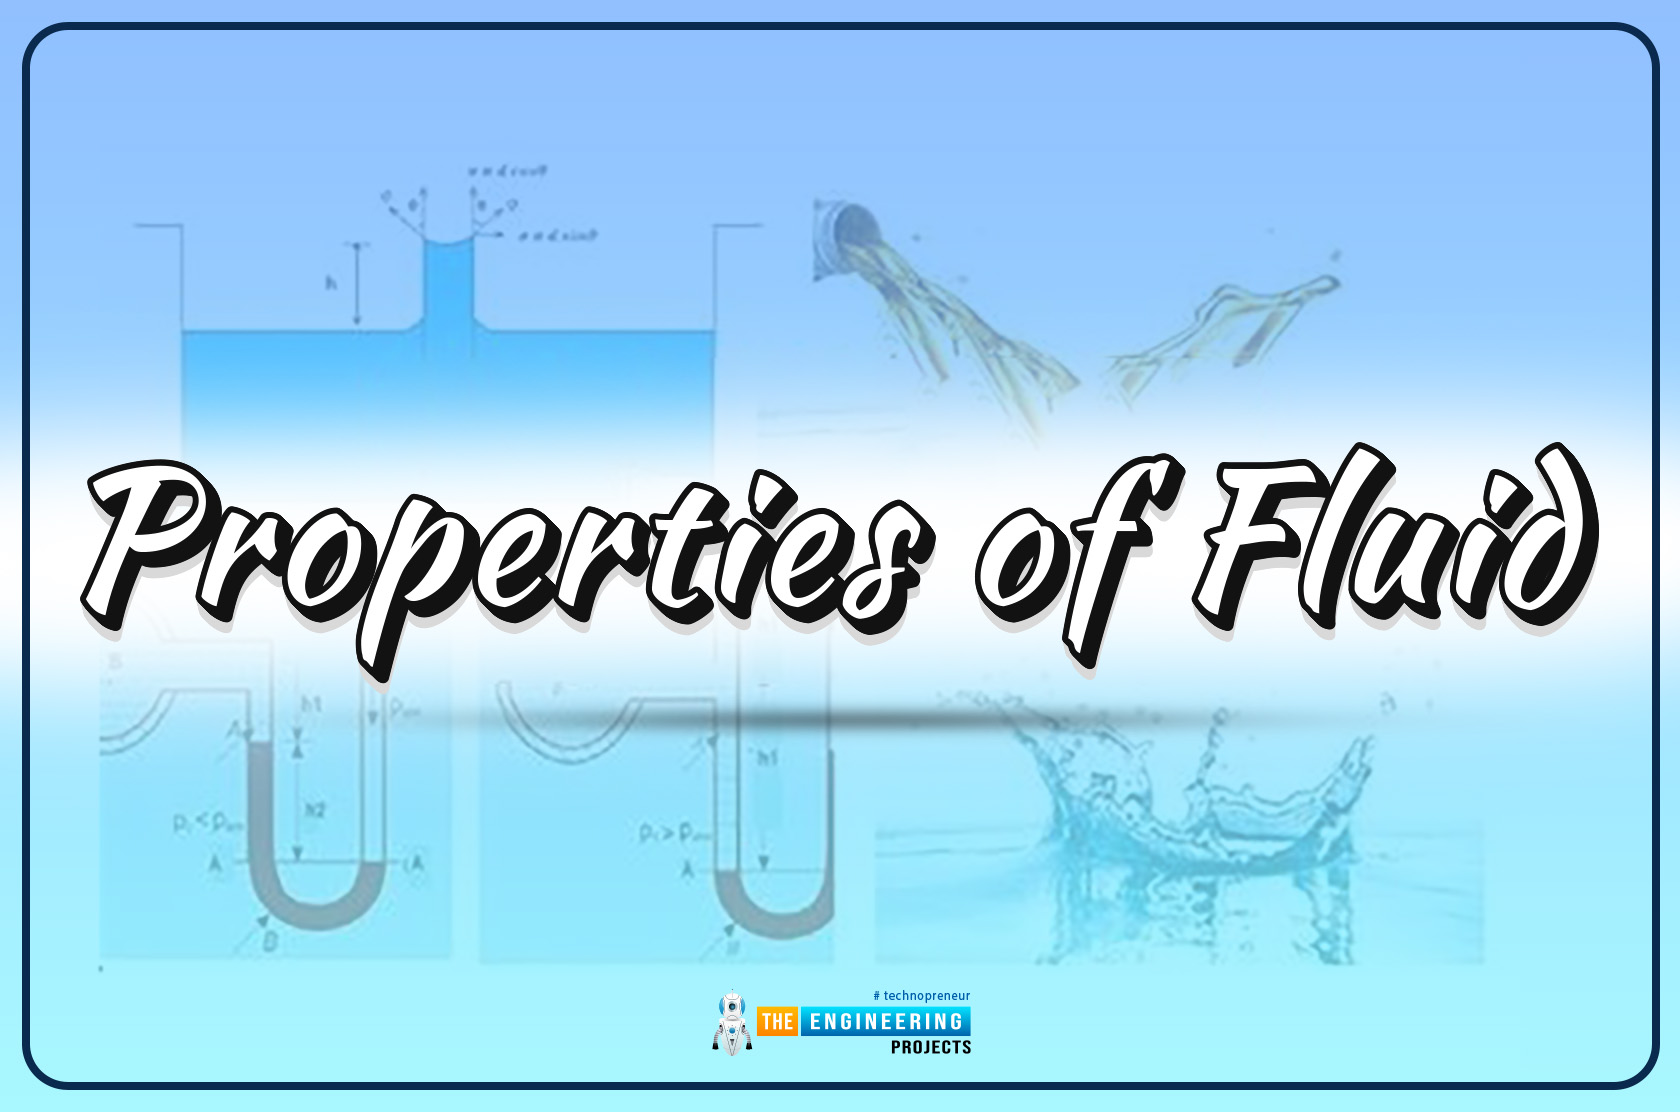 Fluid Properties, properties of fluid, fluid behavior, fluid characteristics